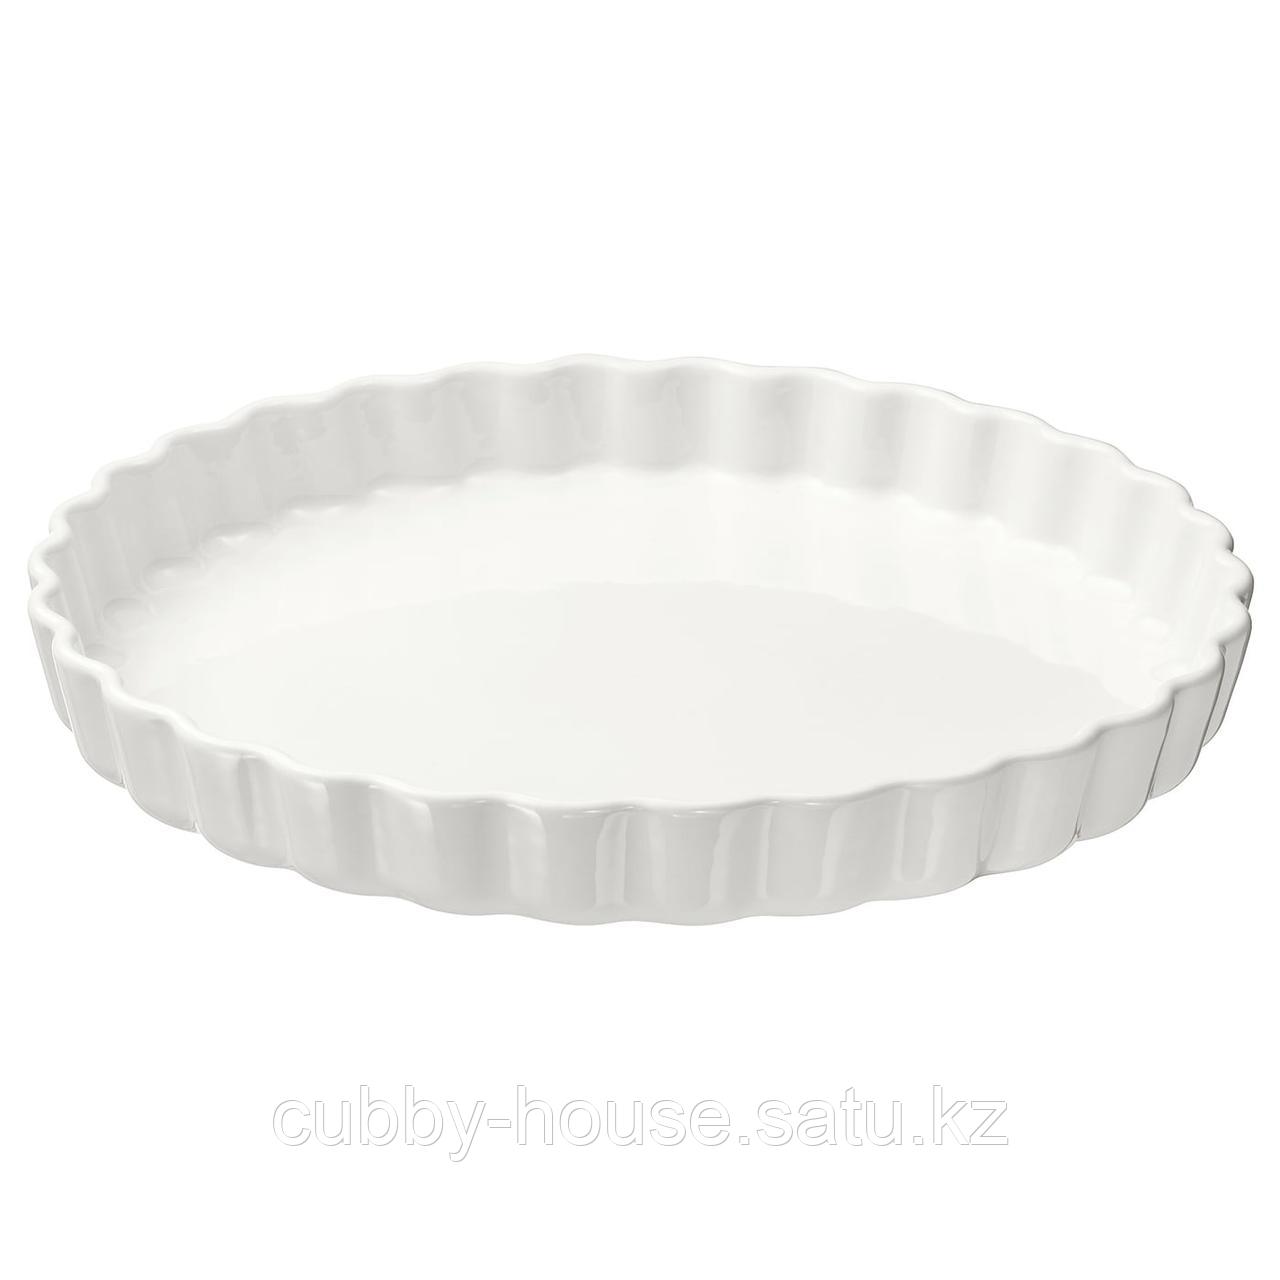 ВАРДАГЕН Форма для открытого пирога, белый с оттенком, 32 см